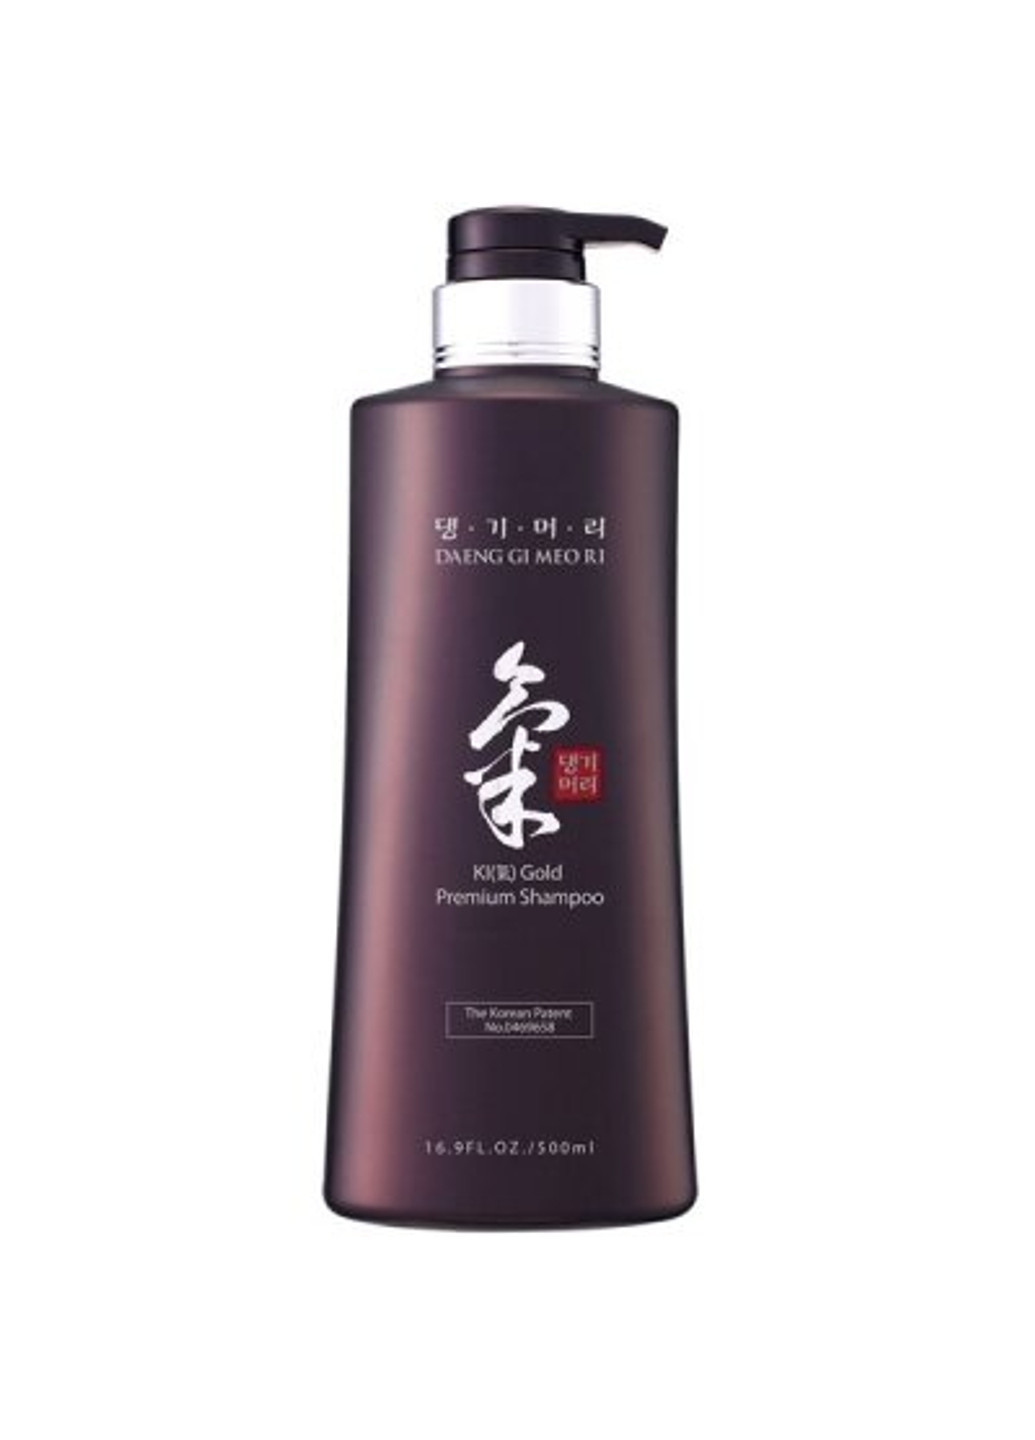 Універсальний шампунь KI GOLD Premium Shampoo 500 мл Daeng Gi Meo Ri (251856183)